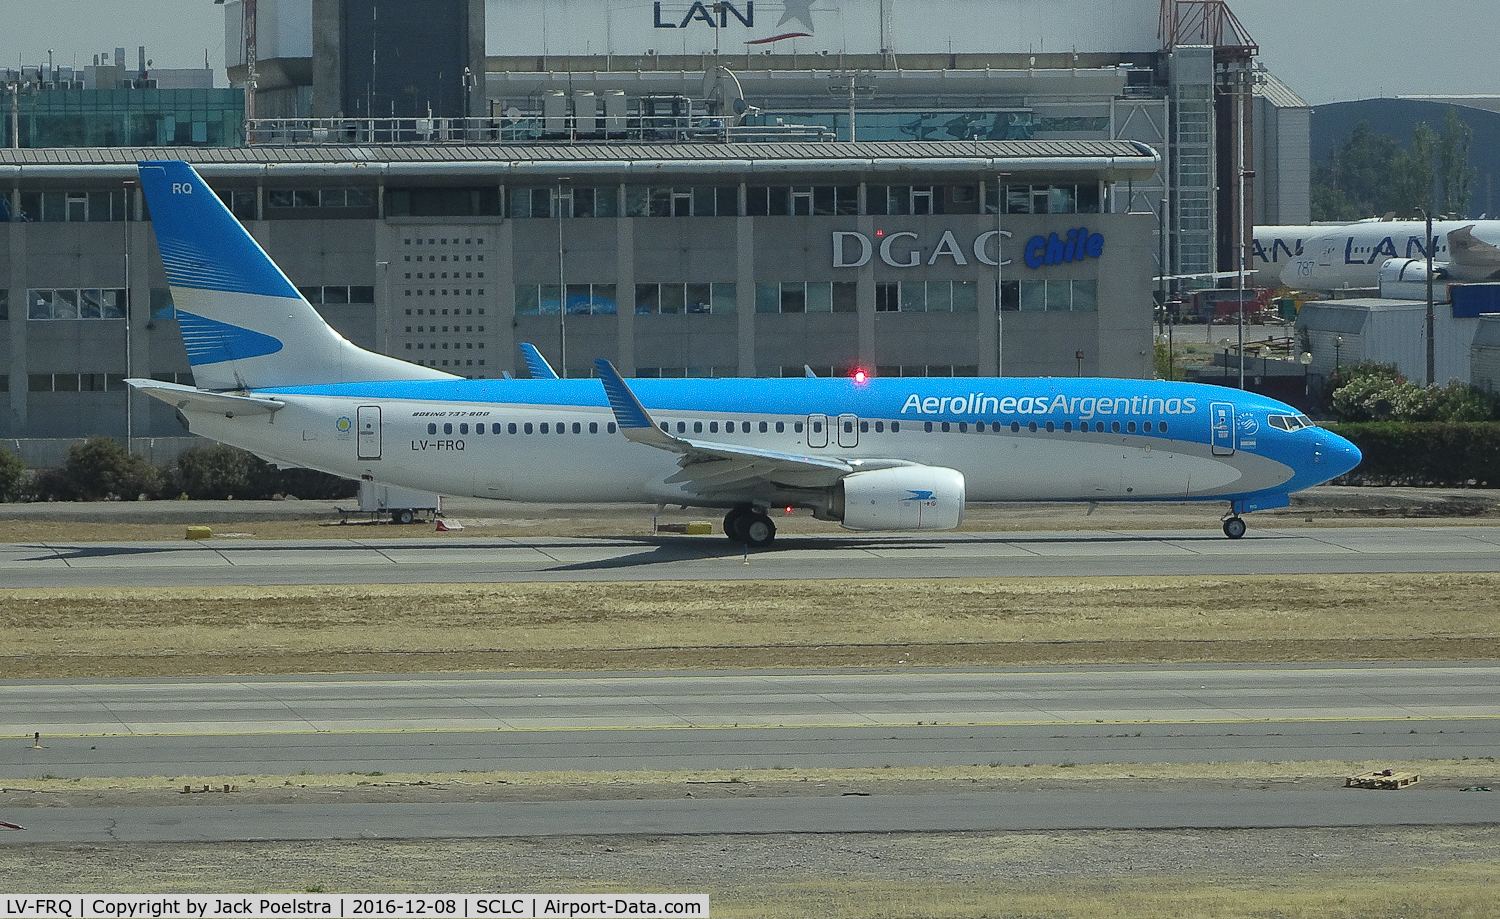 LV-FRQ, 2014 Boeing 737-8BK C/N 41561, LV-FRQ of Aerolineas Argentinas